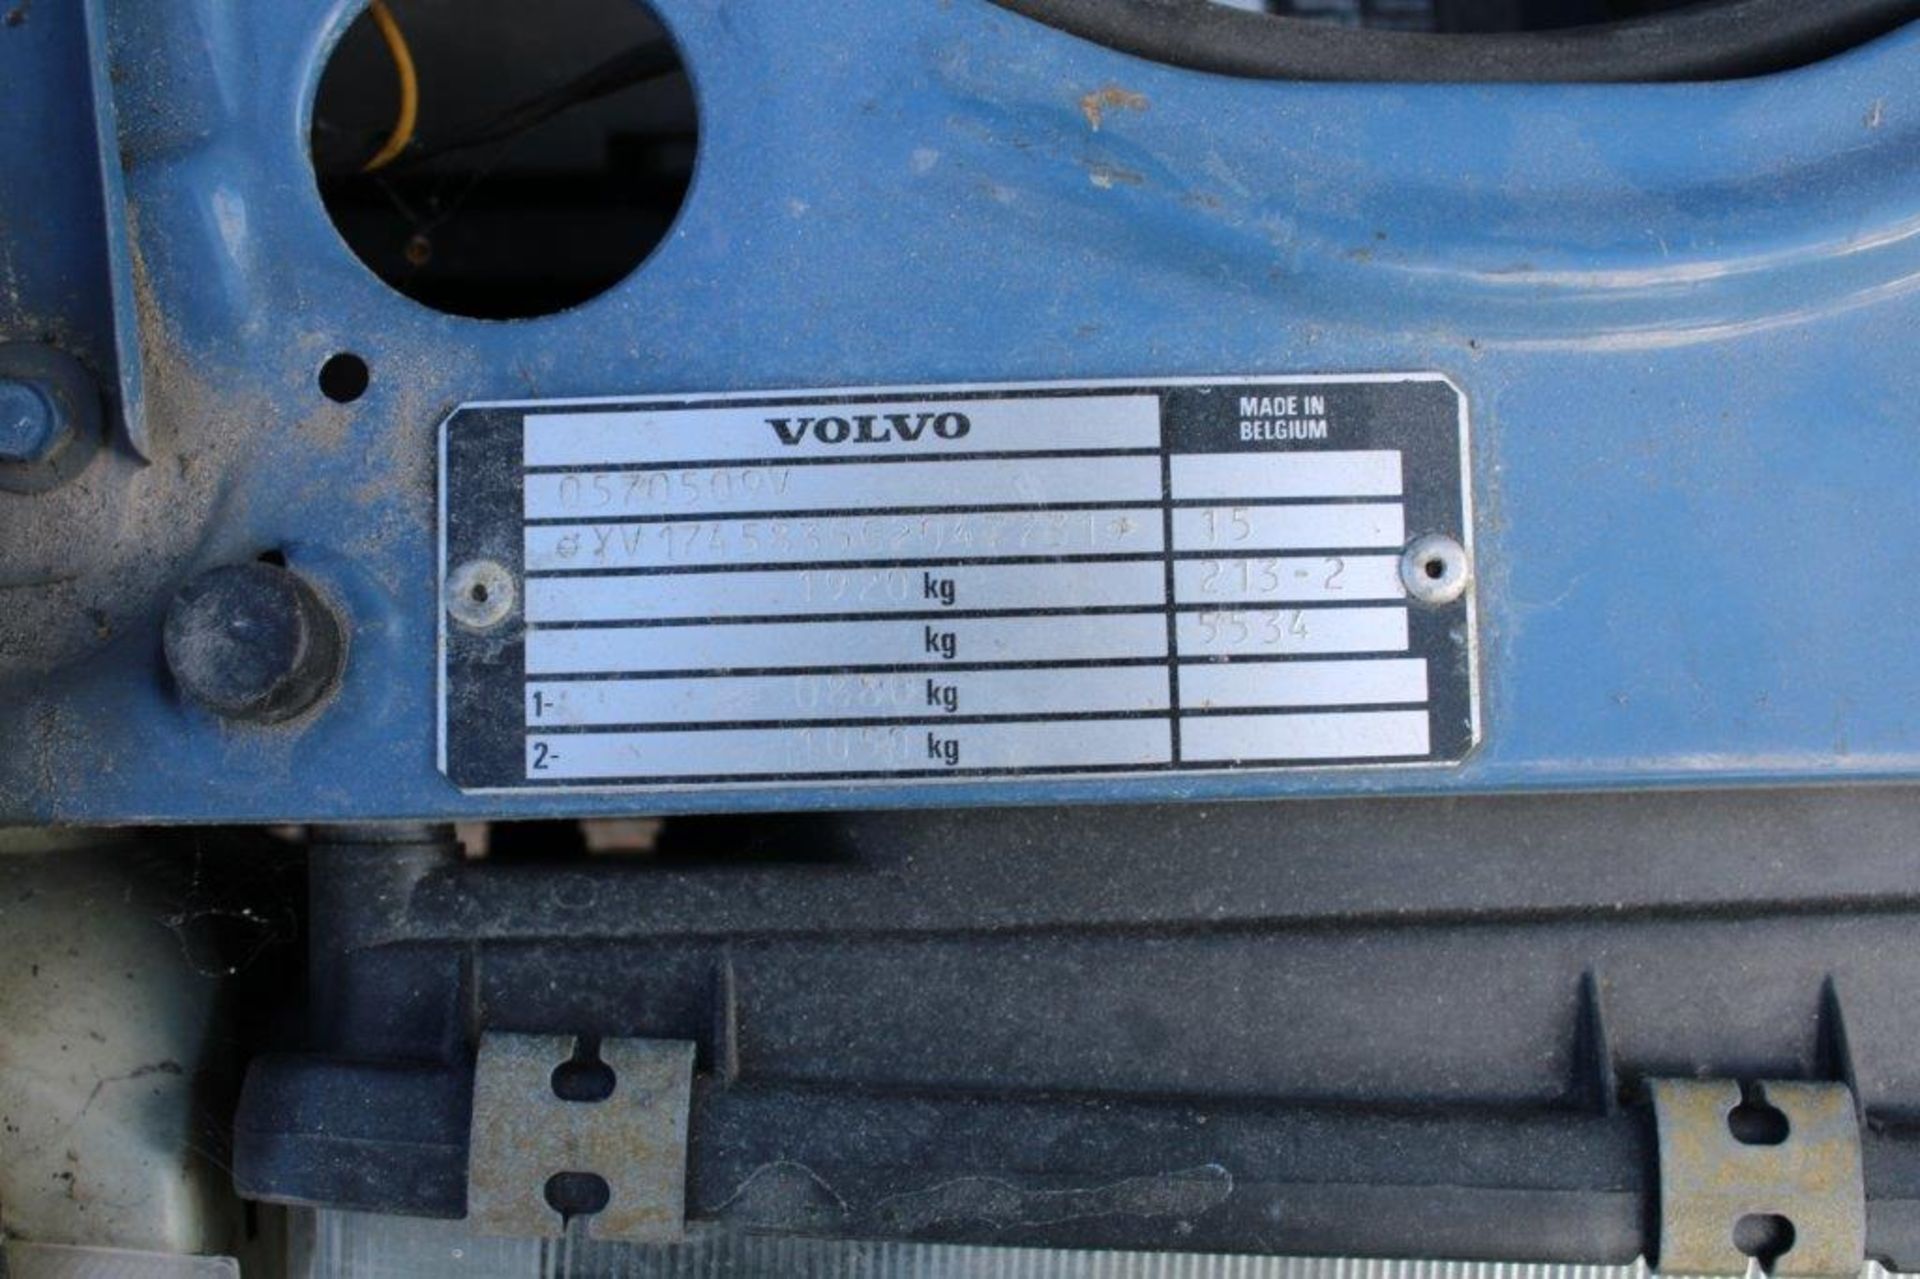 1986 Volvo 740 GL Auto Estate - Image 15 of 19